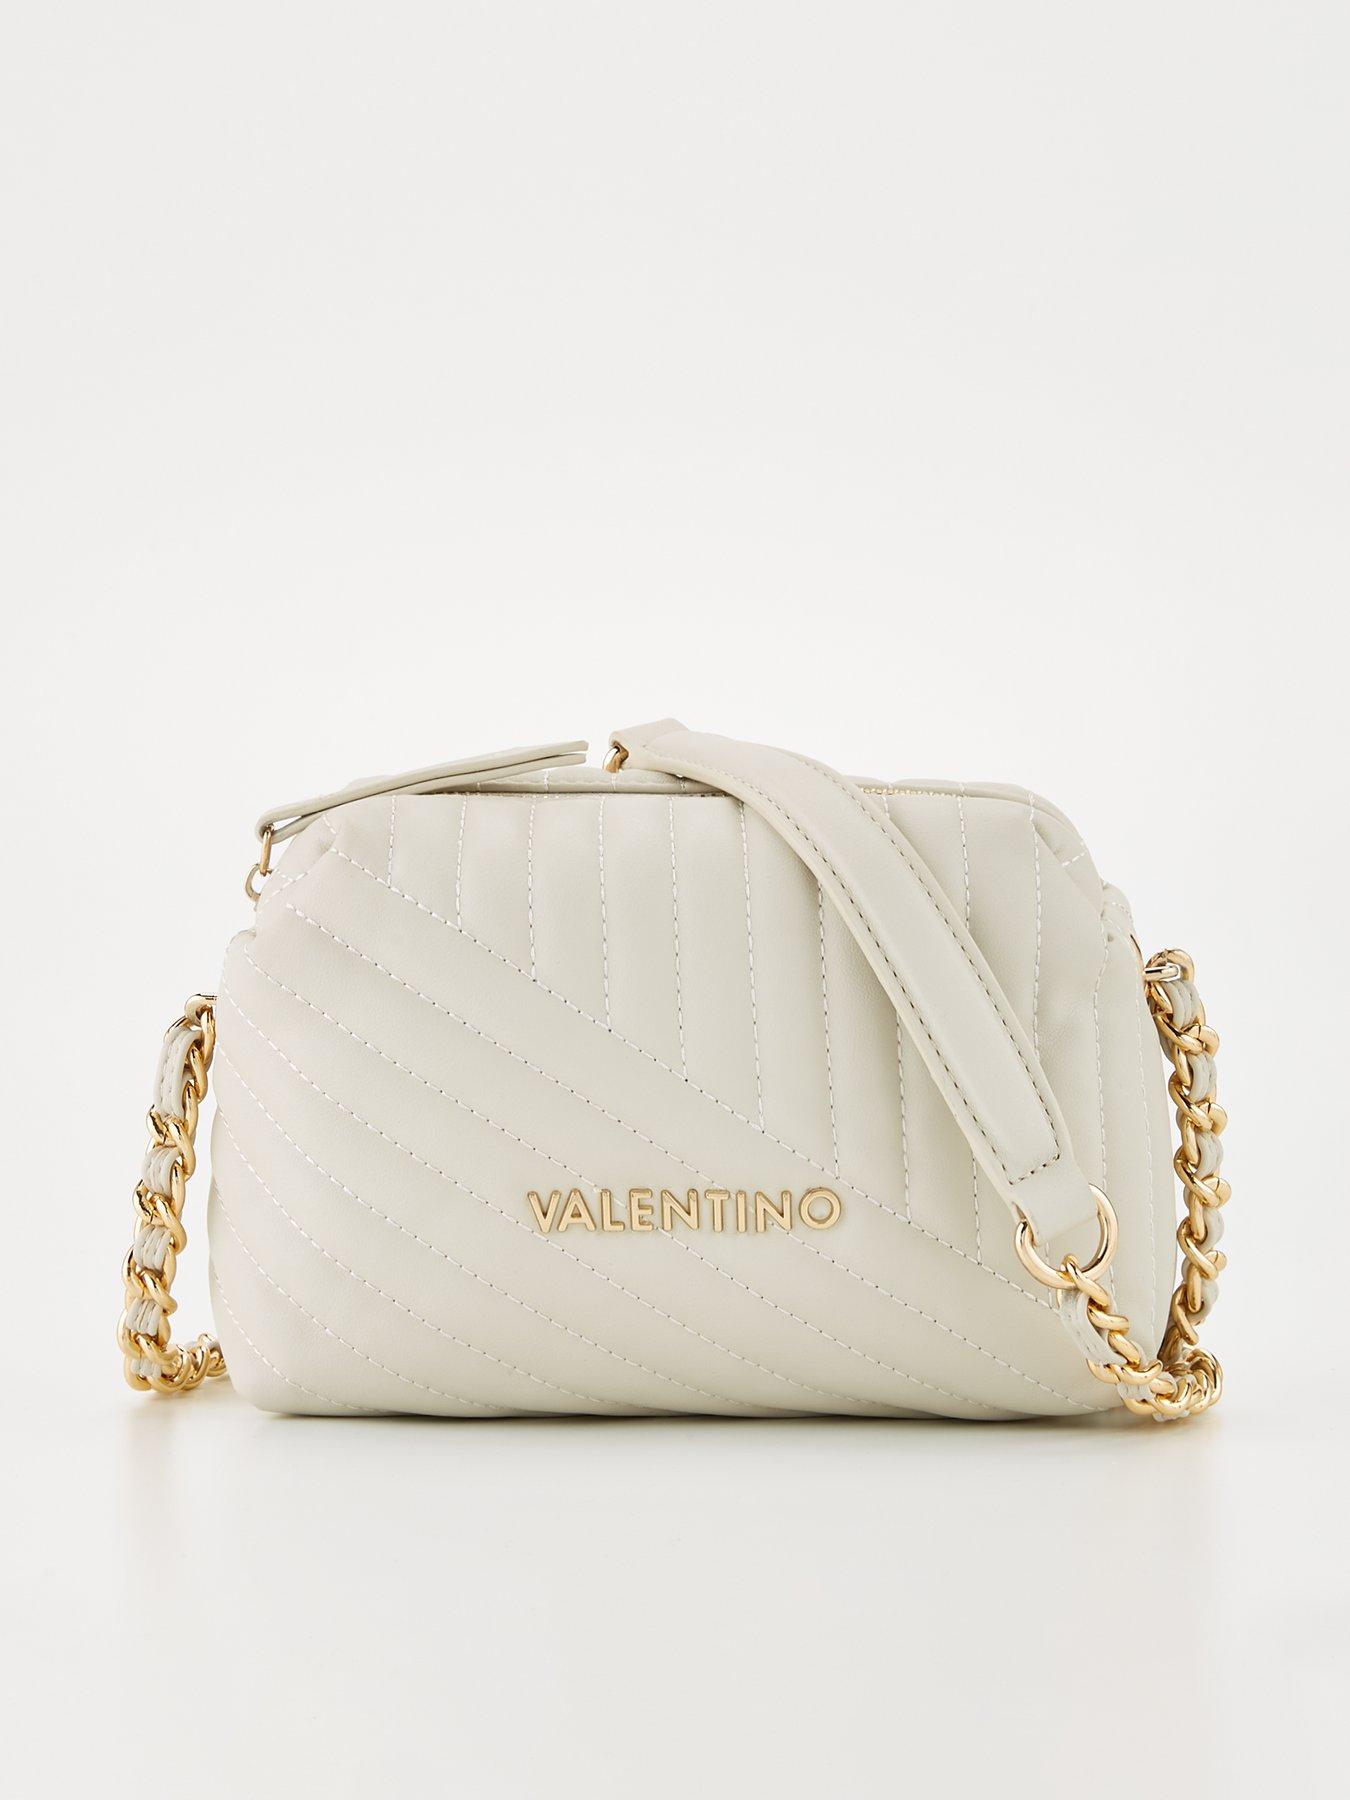 Valentino bag - 121 Brand Shop